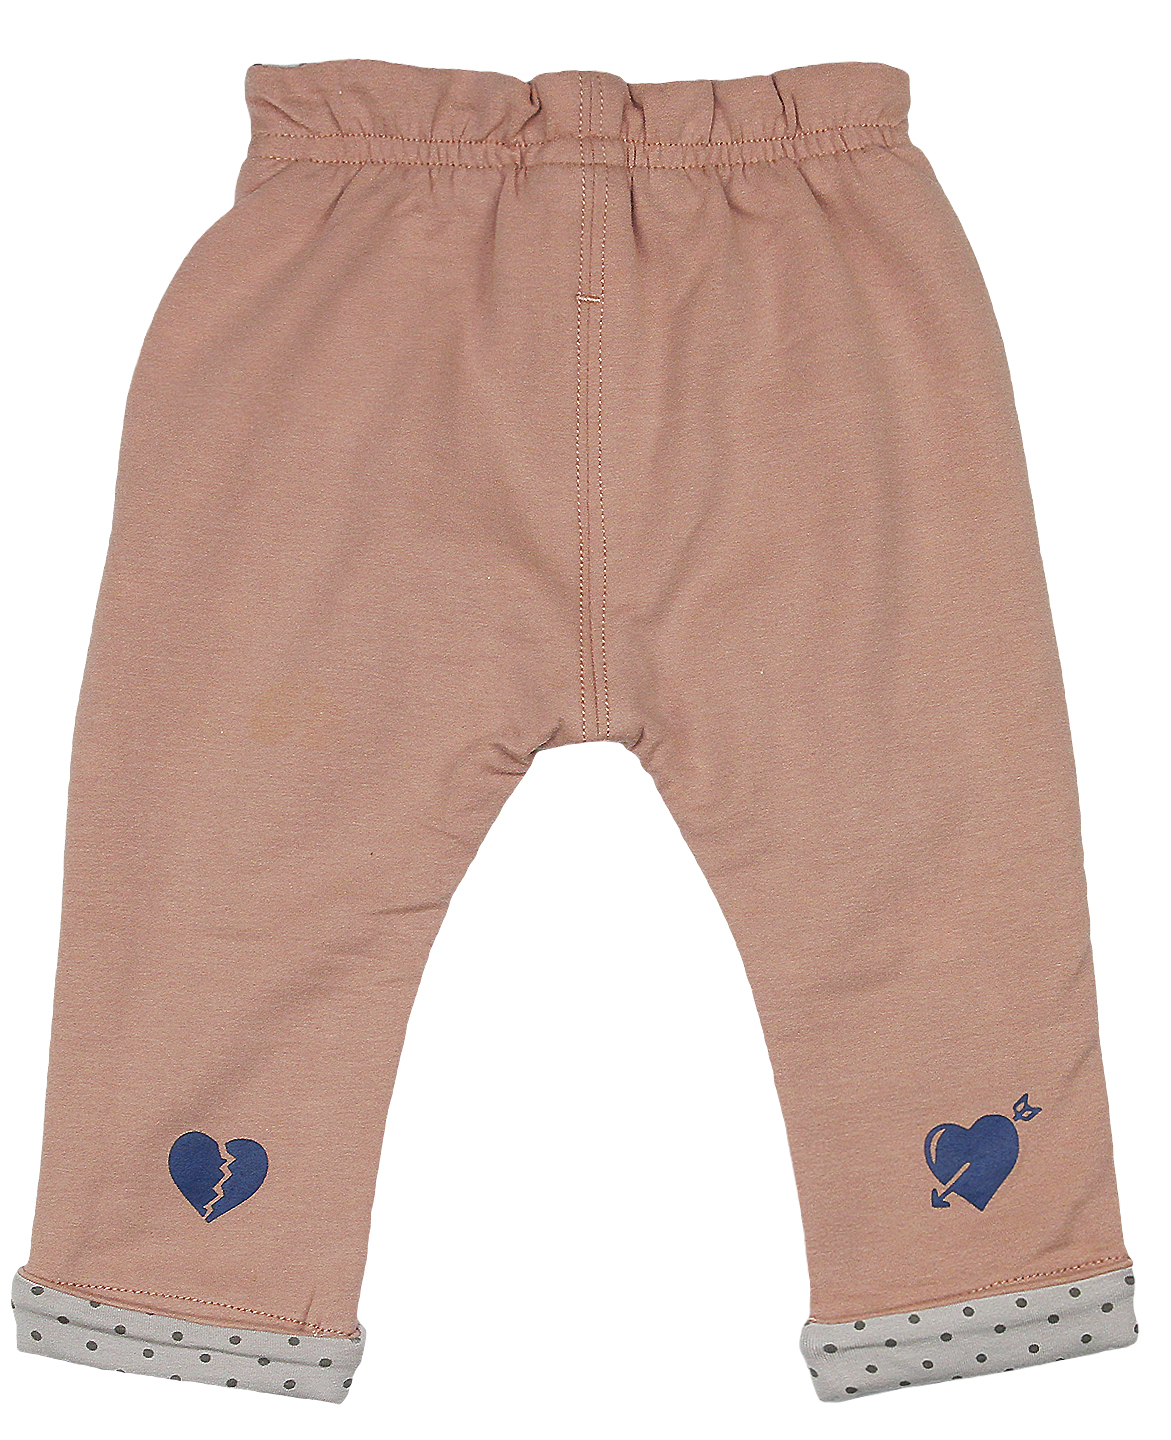 7798 Трикотажные штаны (Р-р: 2; Цв.: Розовый; Возраст: 6 месяцев; Рост: 68 см; Длина штанины: 21 см)